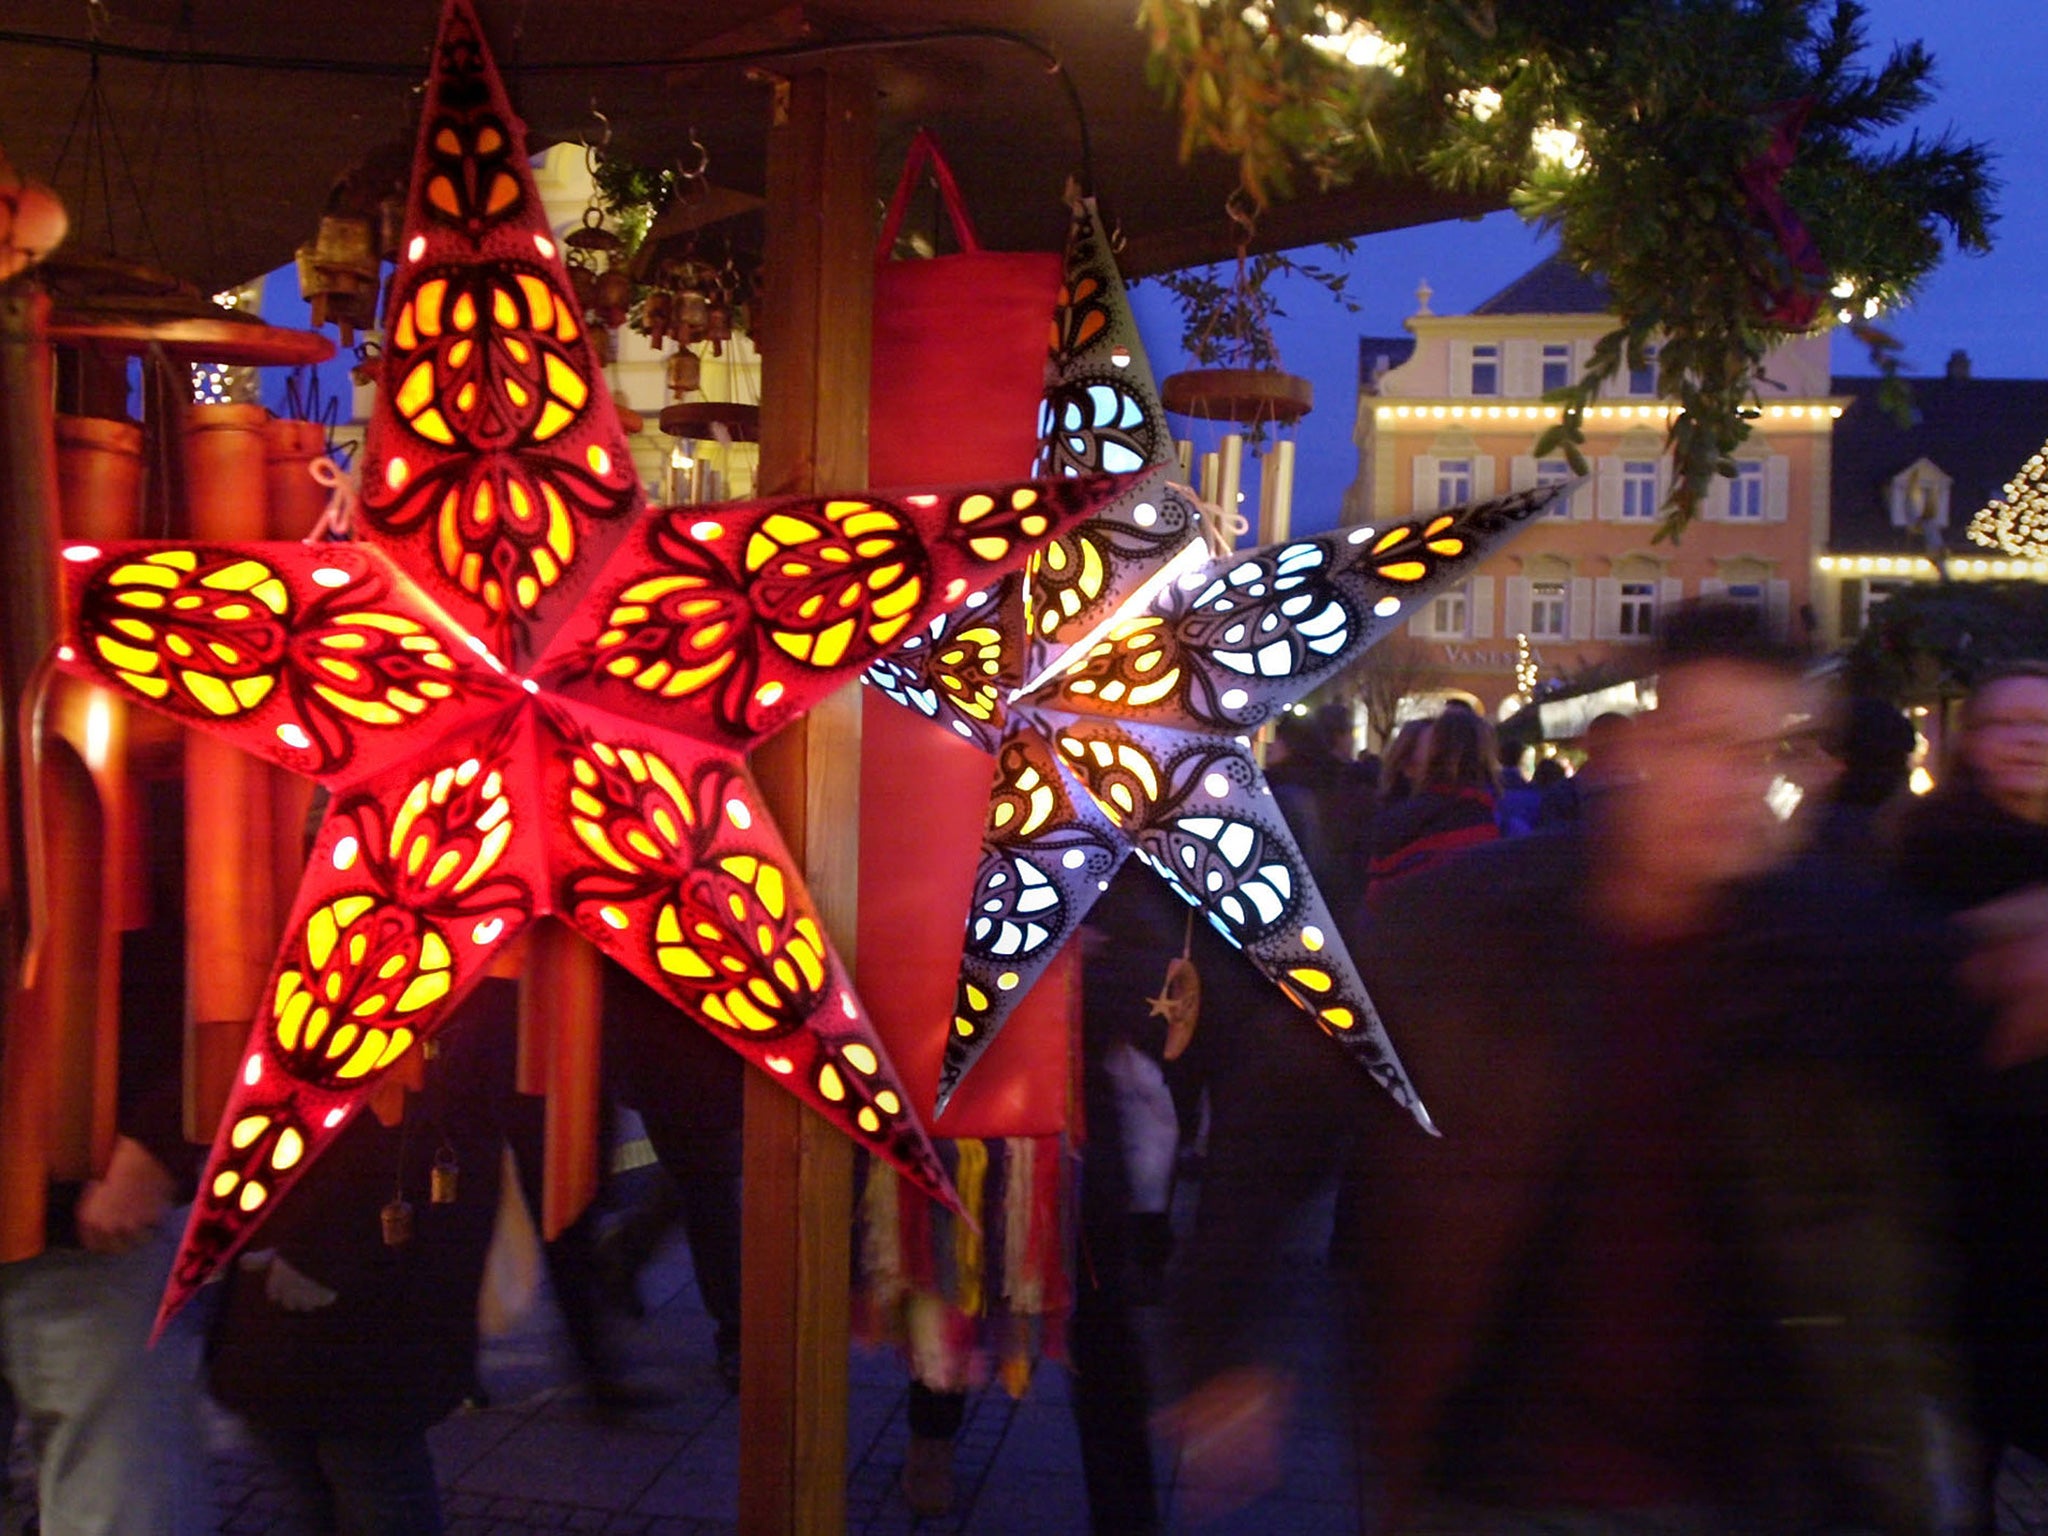 Decorative stars on show in Stuttgart's Christmas market